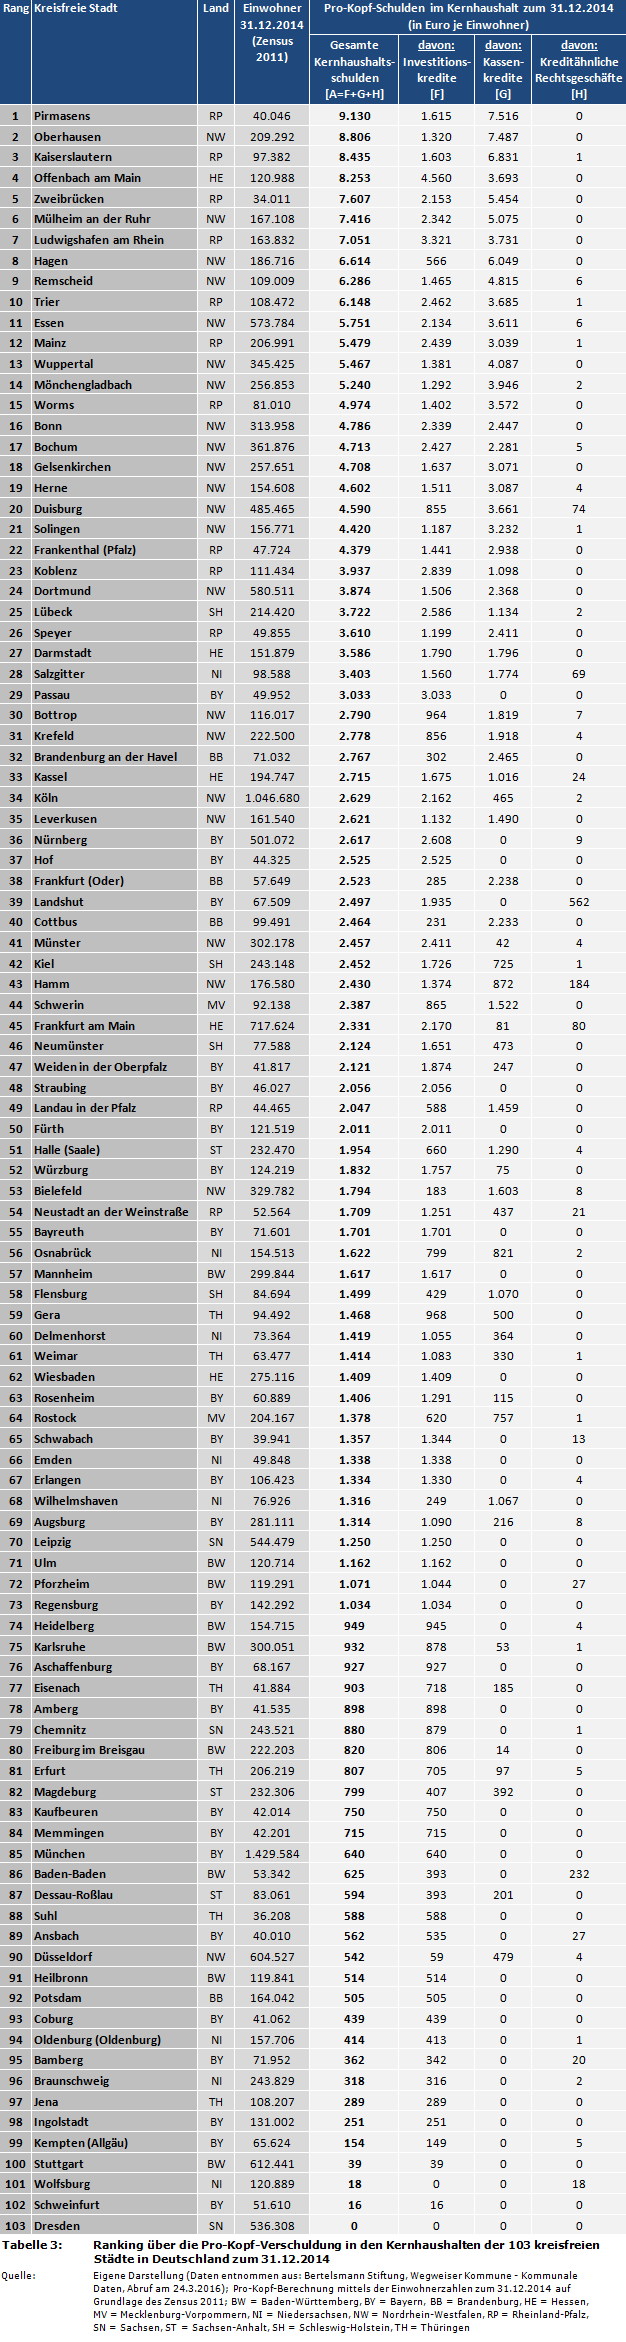 Stadtfinanzen: Ranking über die Pro-Kopf-Verschuldung in den Kernhaushalten der 103 kreisfreien Städte in Deutschland zum 31.12.2014